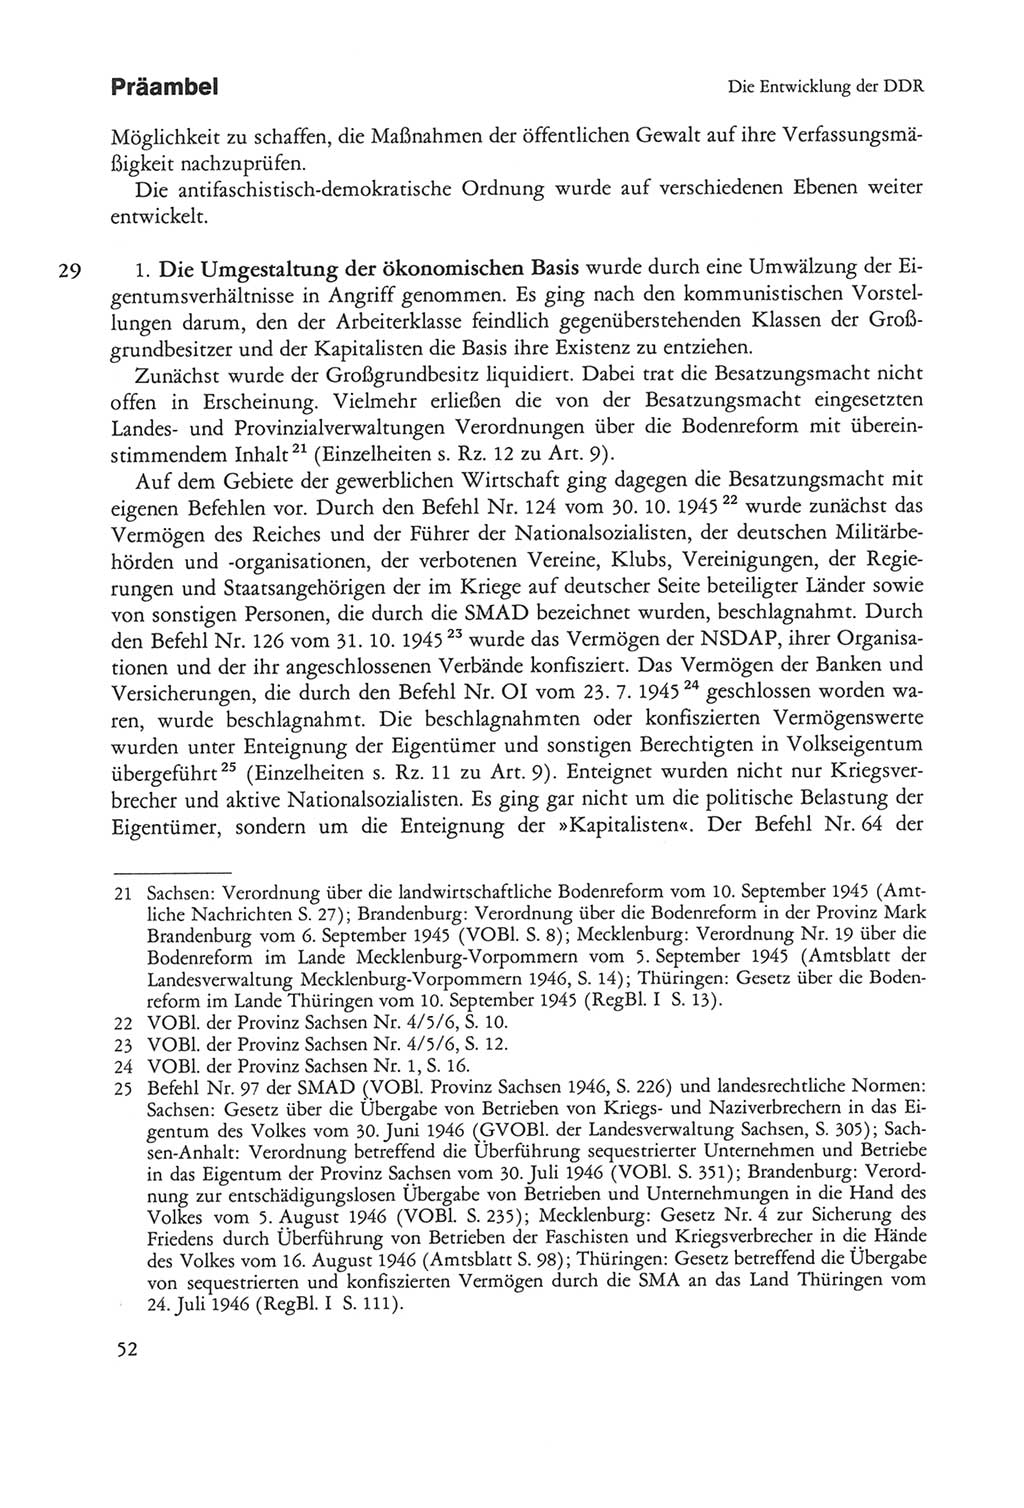 Die sozialistische Verfassung der Deutschen Demokratischen Republik (DDR), Kommentar mit einem Nachtrag 1997, Seite 52 (Soz. Verf. DDR Komm. Nachtr. 1997, S. 52)